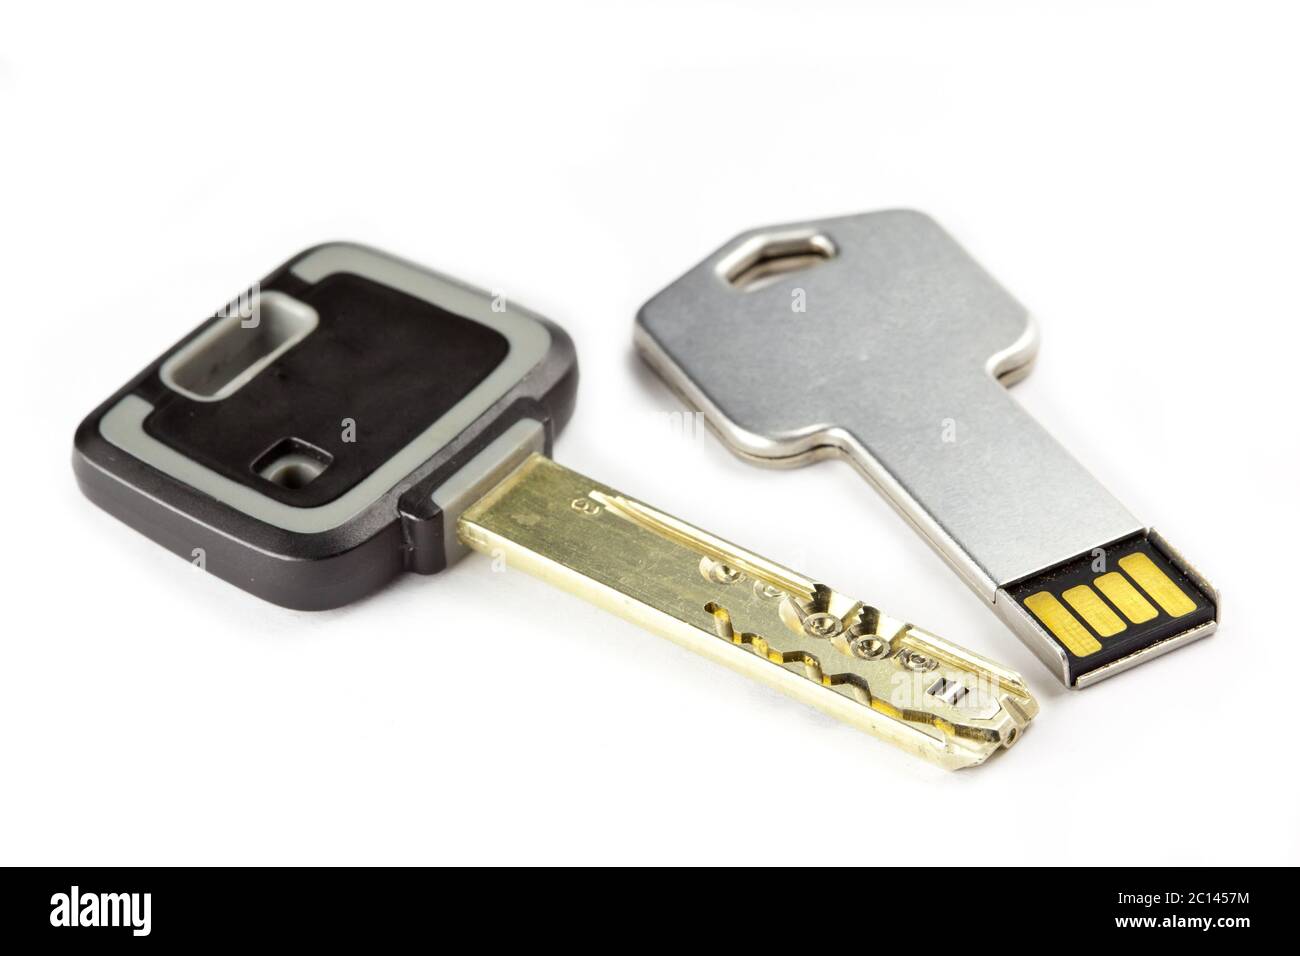 Schlüssel mechanisch, rissfest, mit hohem Schutzgrad, und ein Schlüssel elektronisch mit einer Mikroch Stockfoto